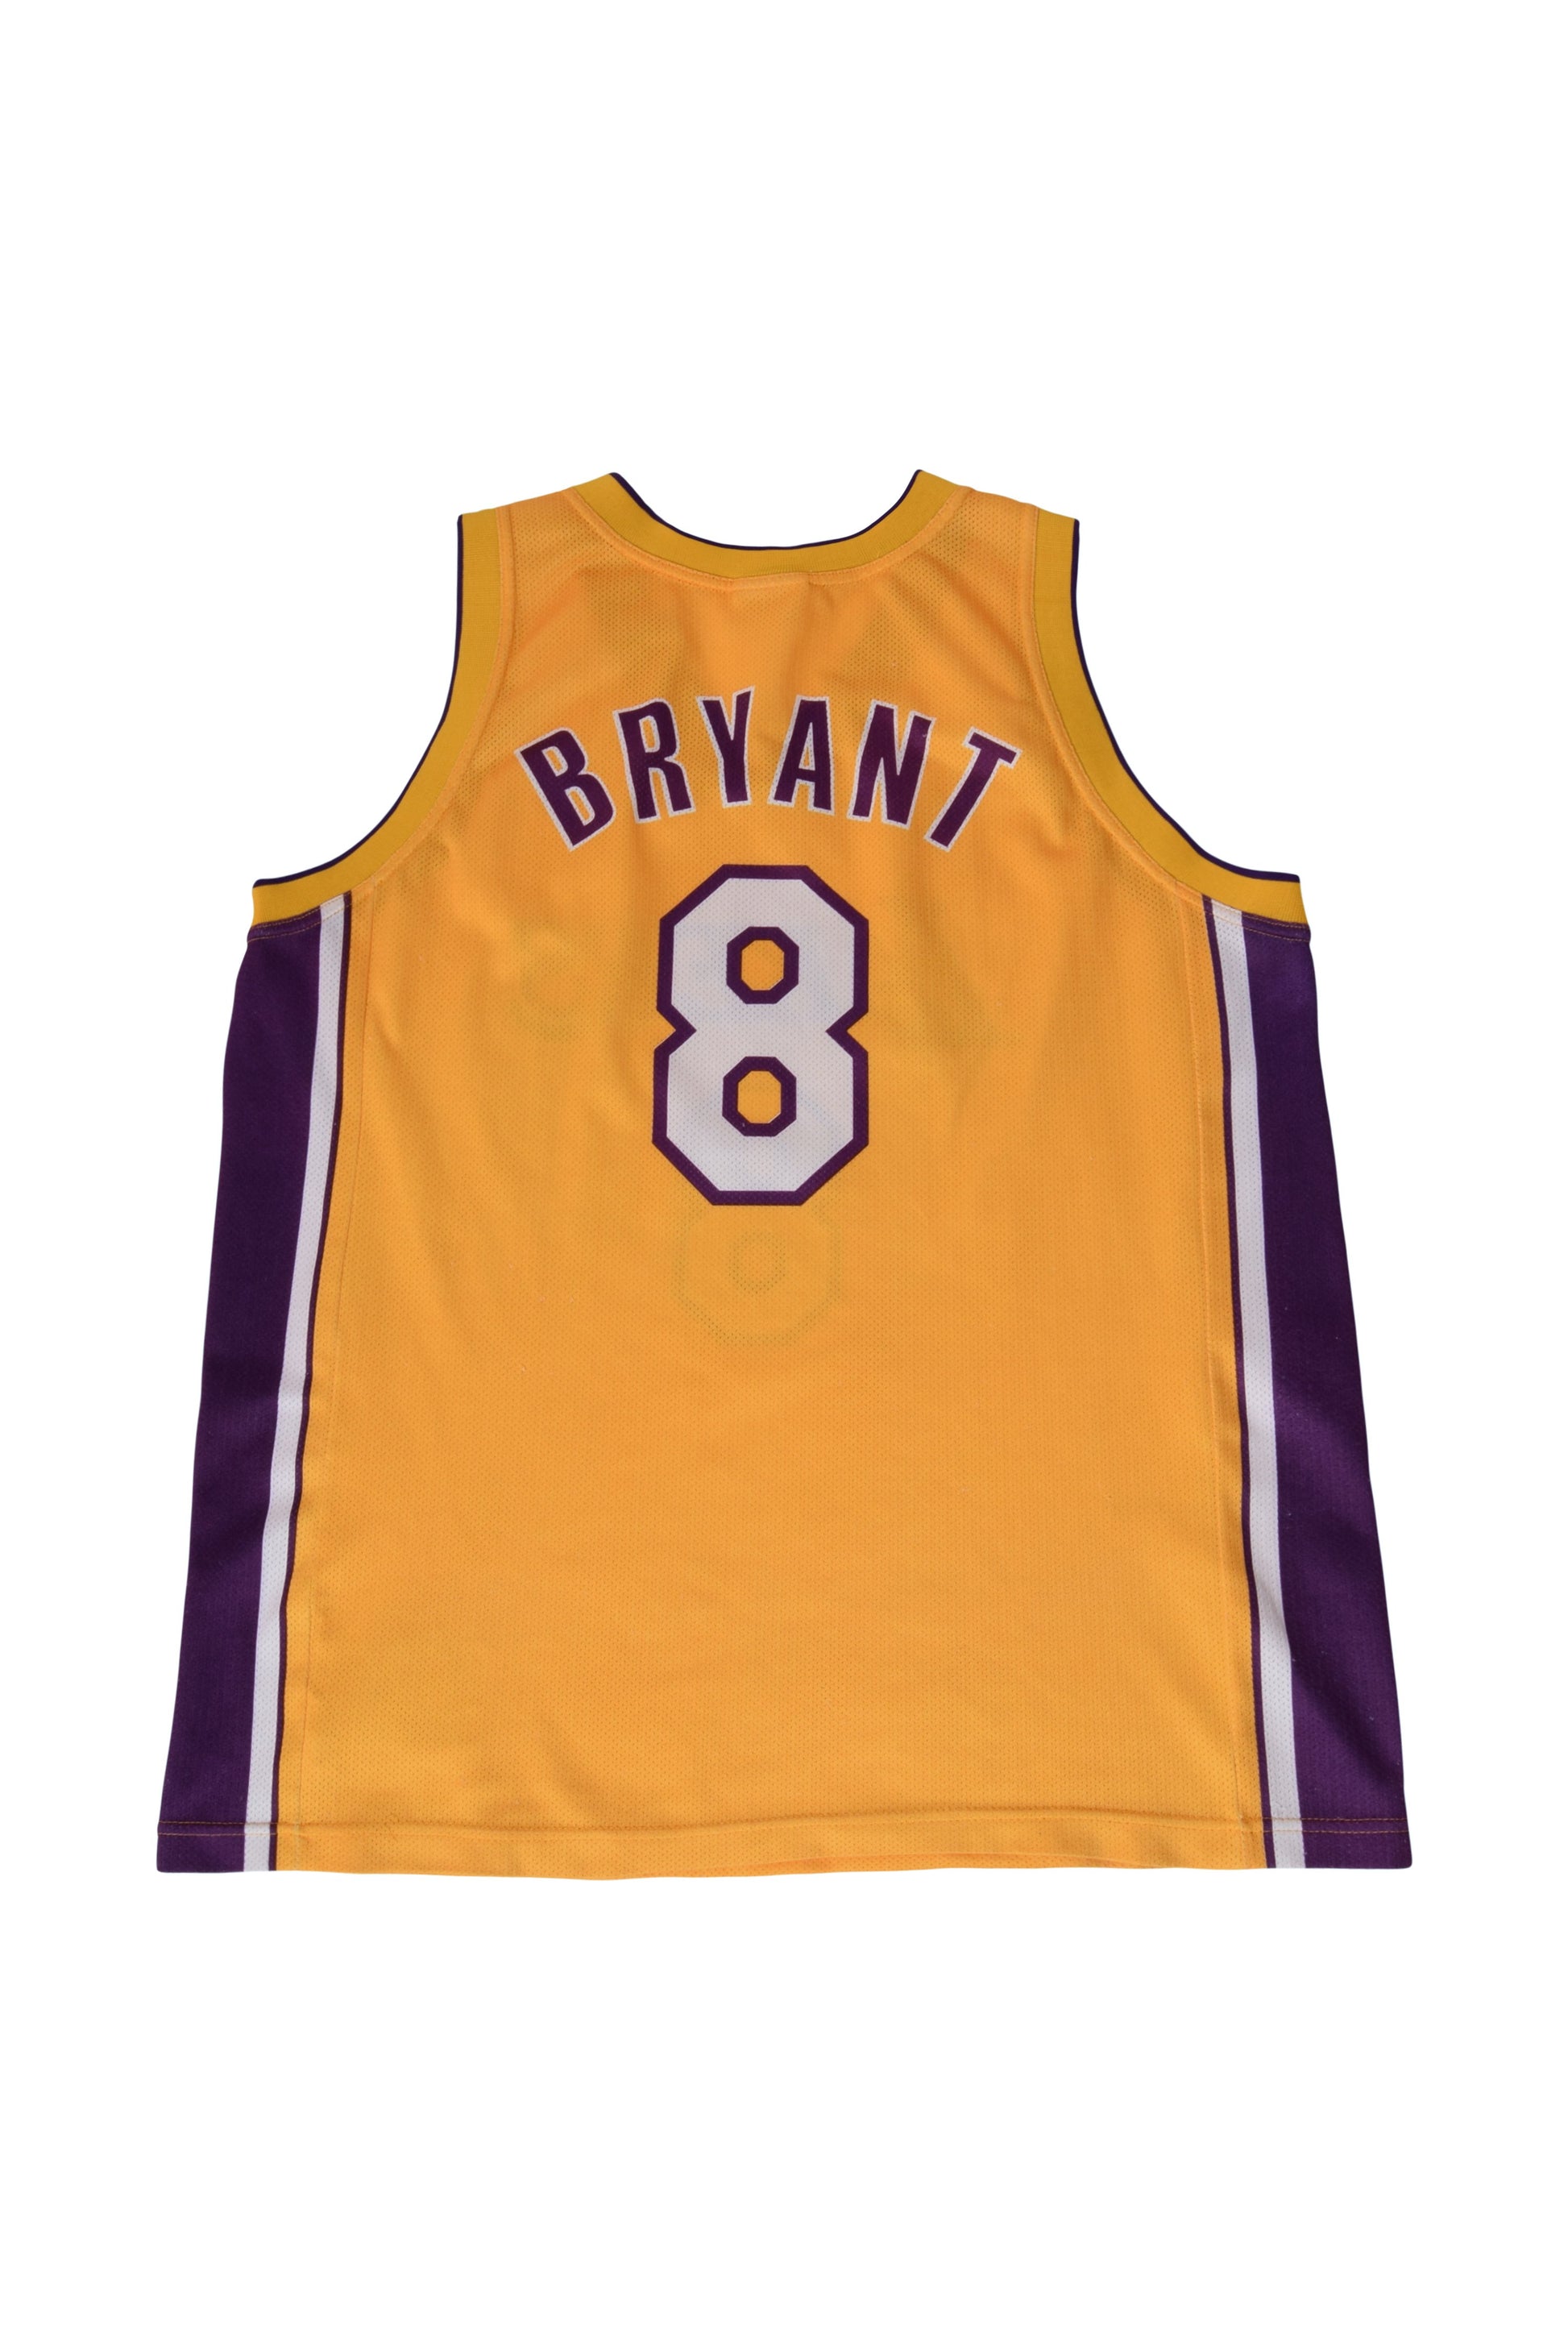 Buy Kobe Bryant 8 Jersey Online In India -  India